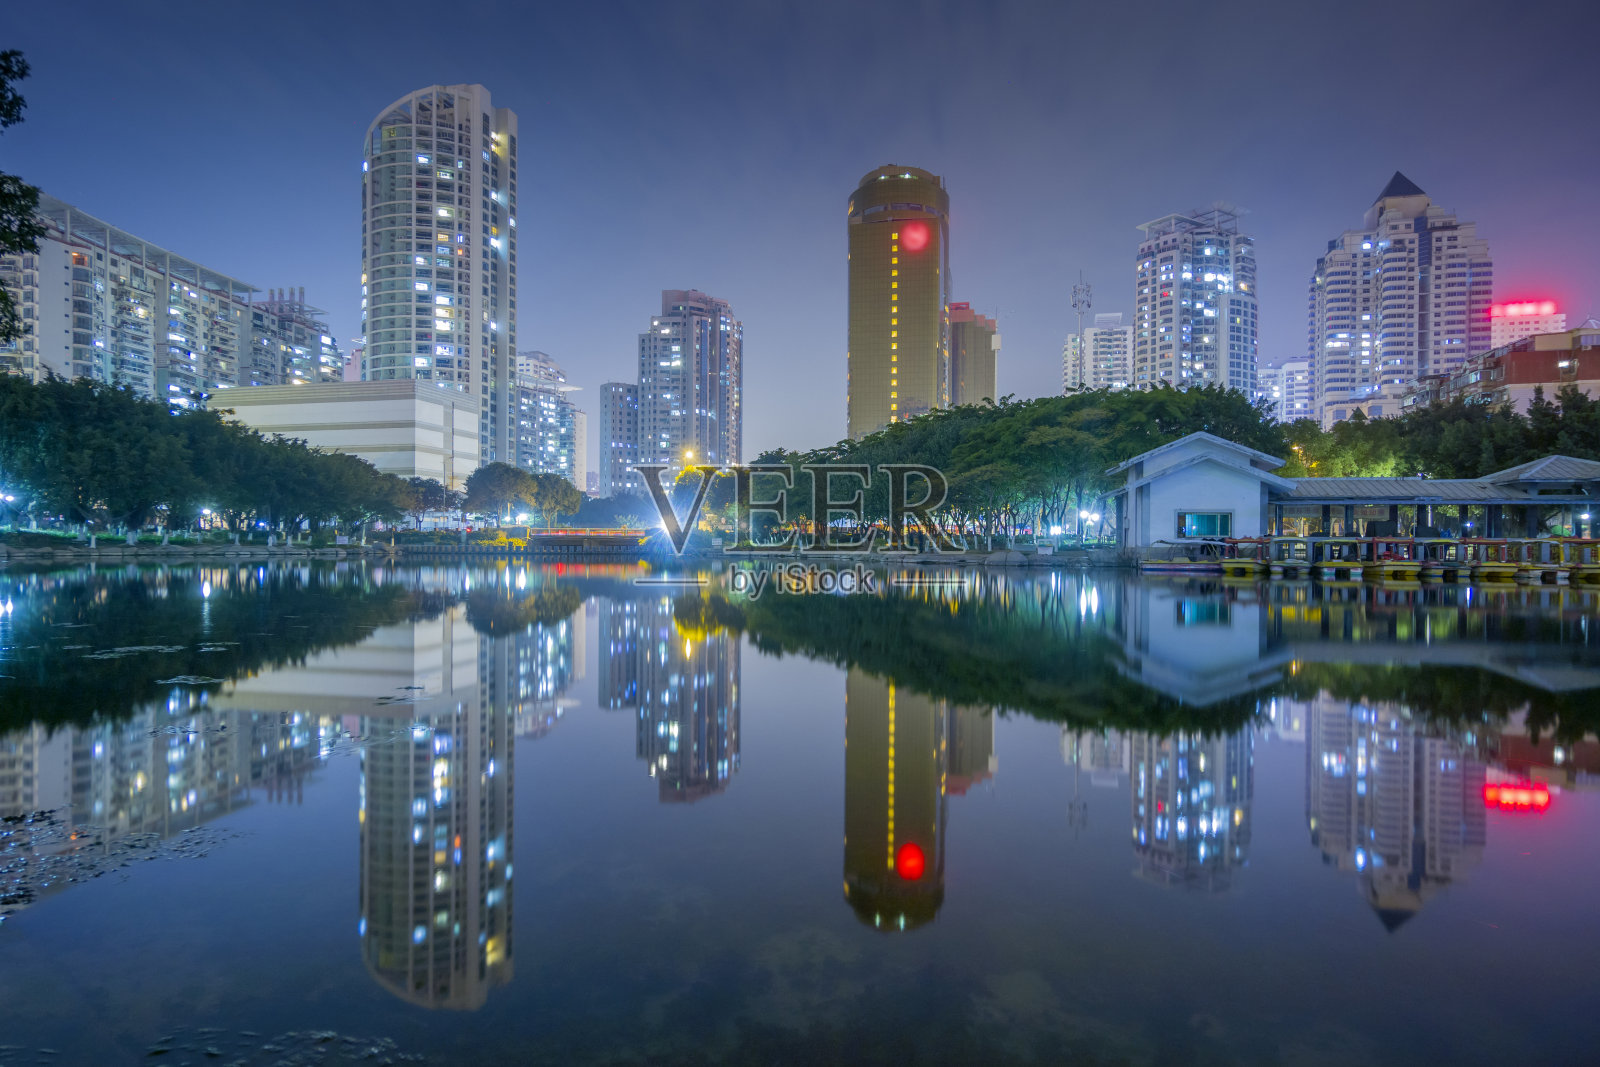 厦门江头公园夜景照片摄影图片